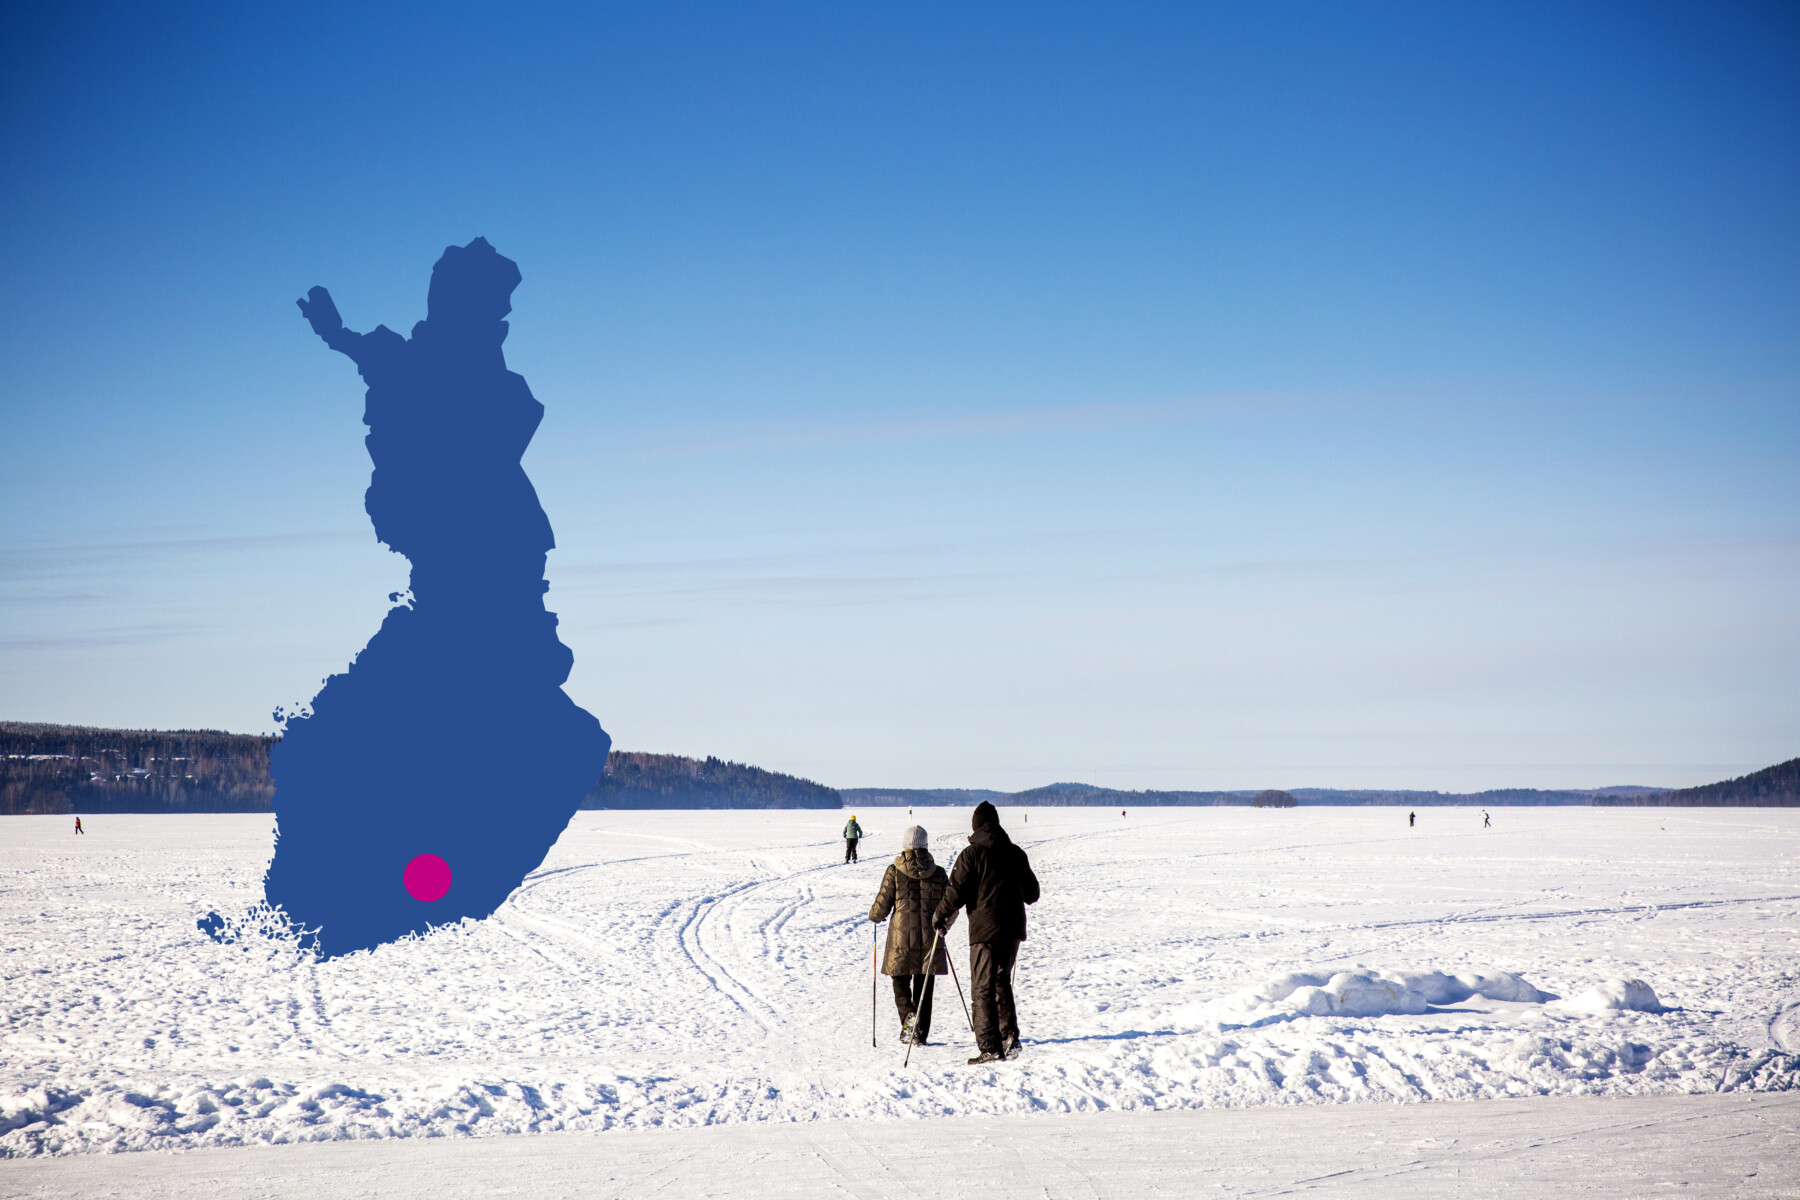 Pessoas estão esquiando em um lago congelado sob um céu azul em Lahti, uma cidade no sul da Finlândia.